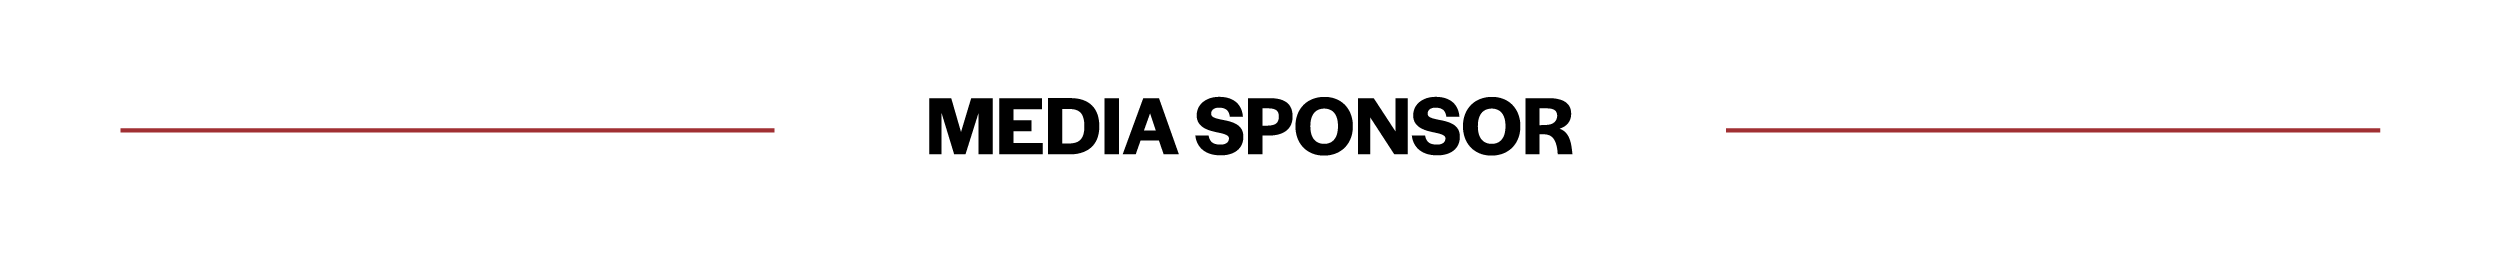 media sponsor